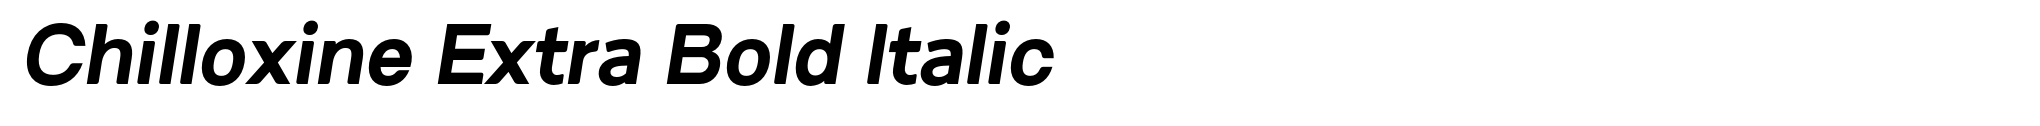 Chilloxine Extra Bold Italic image